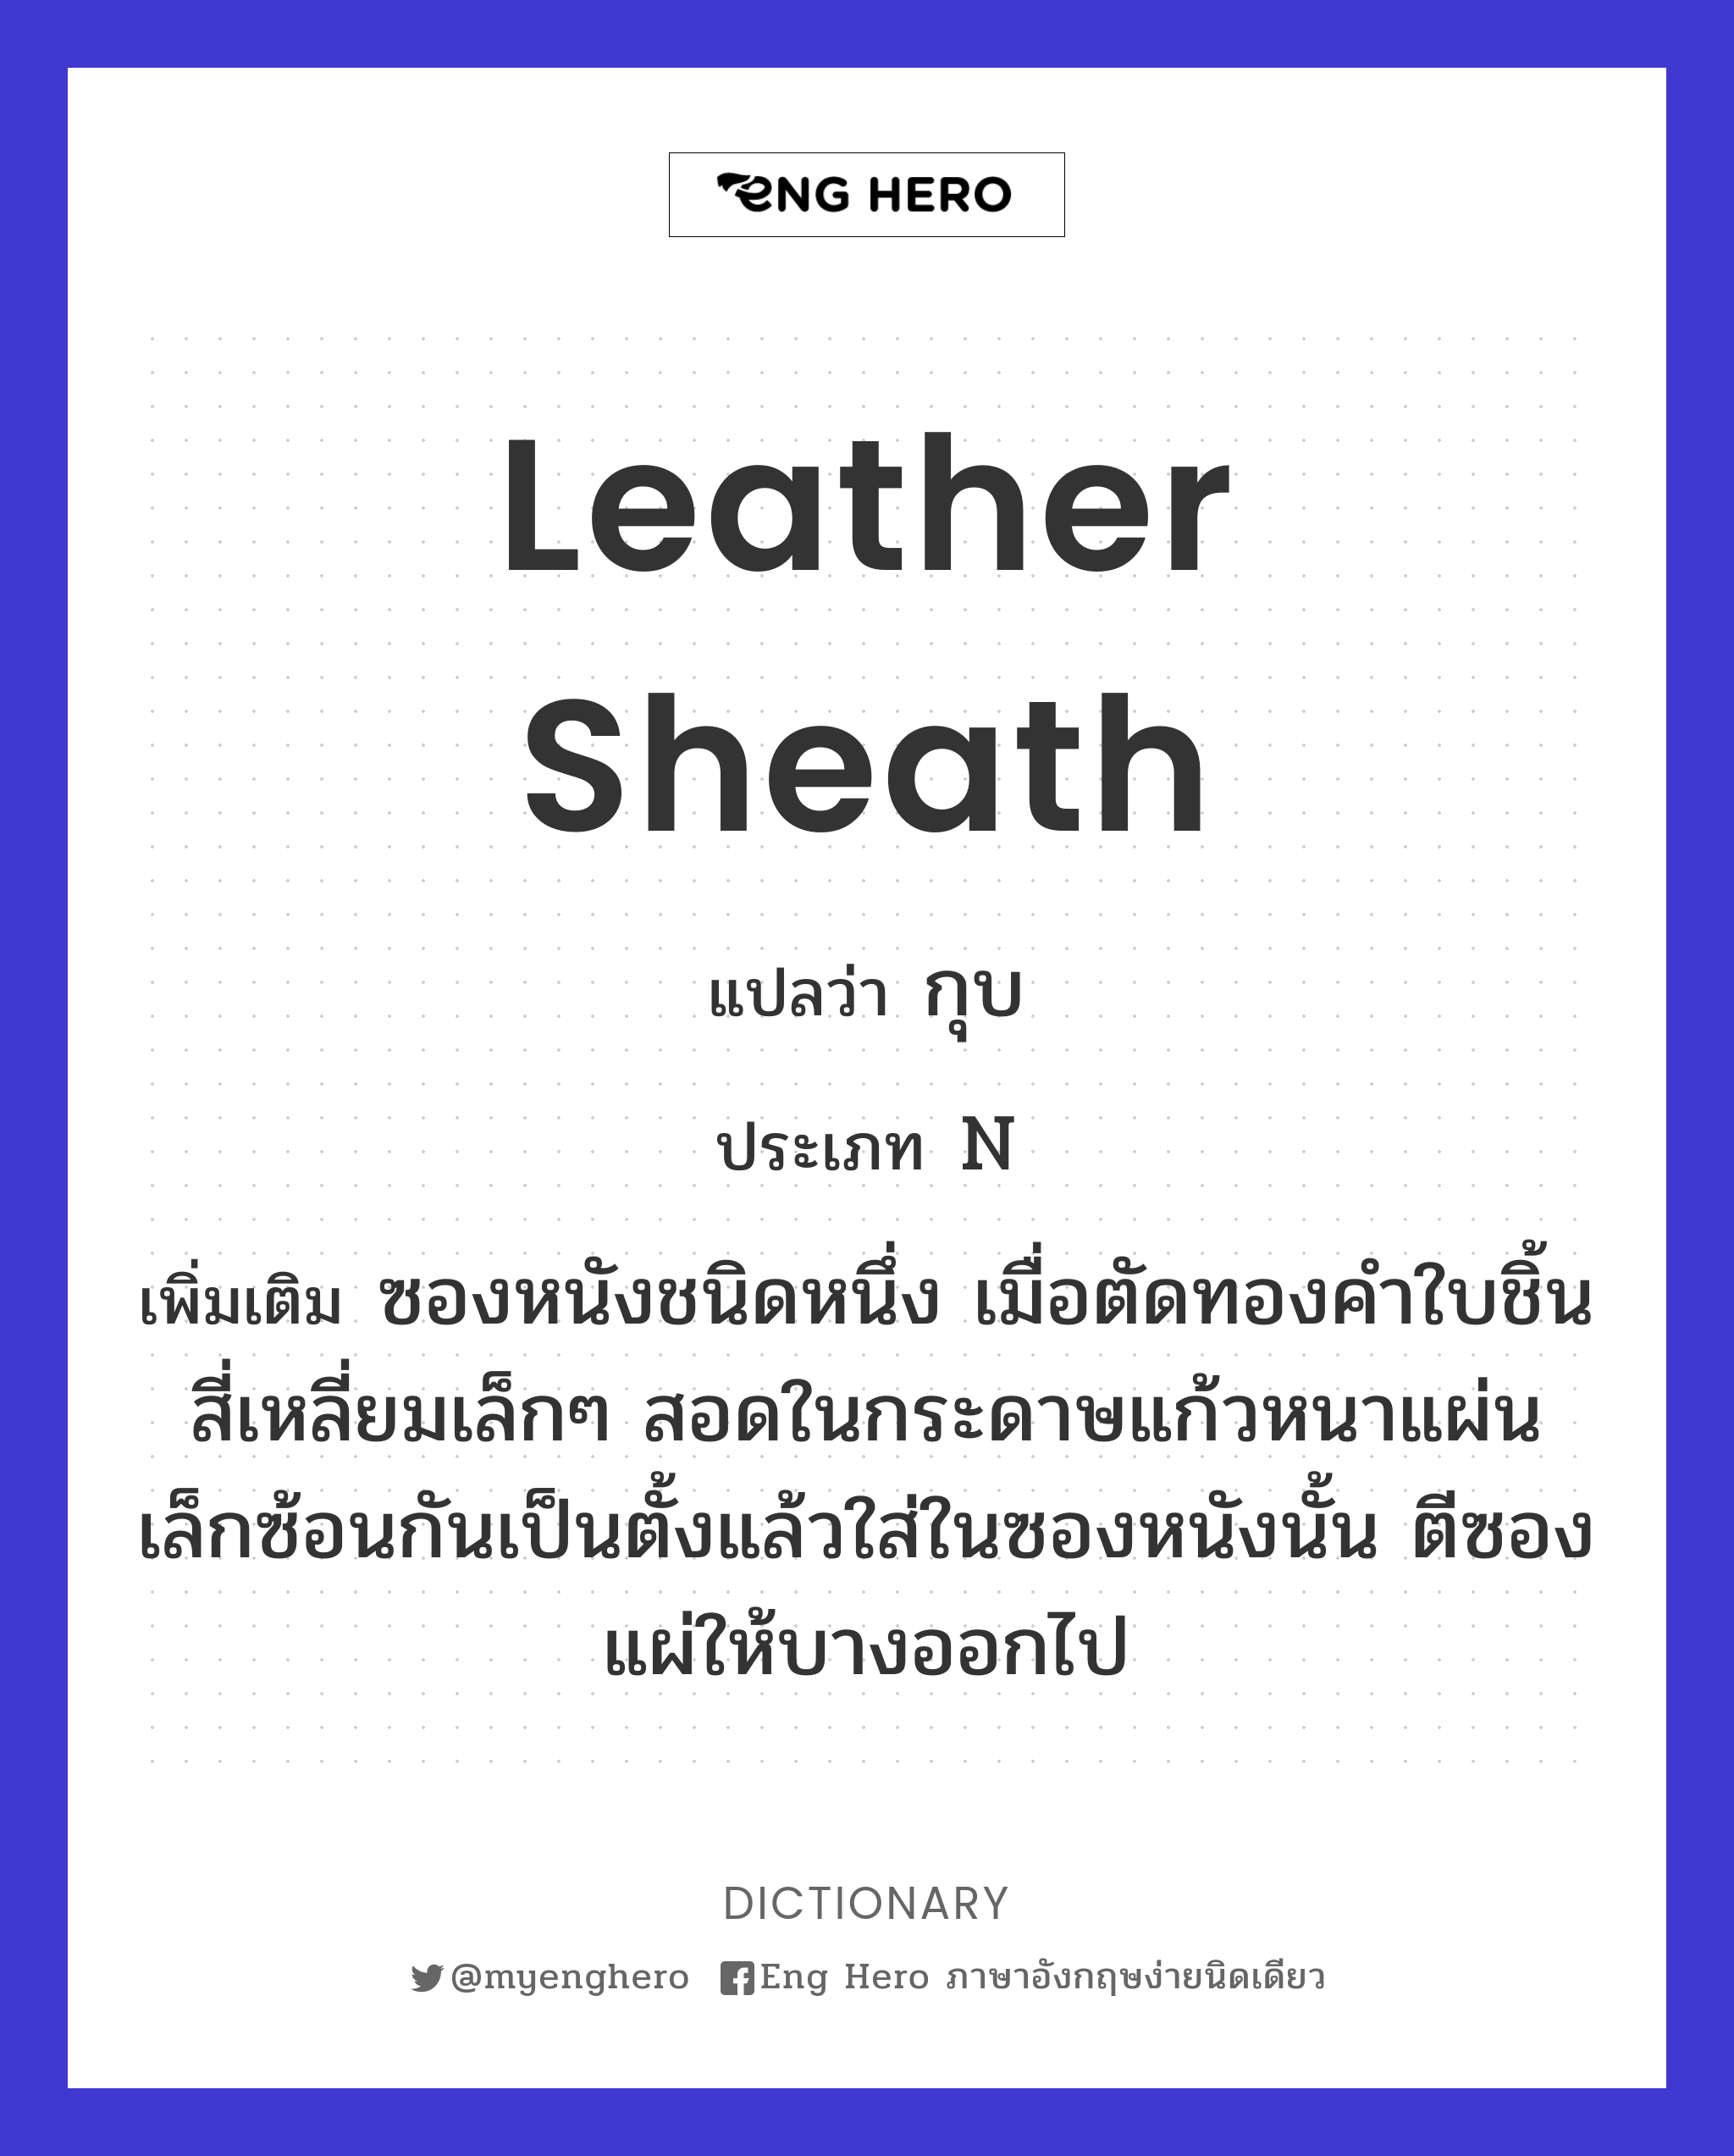 leather sheath